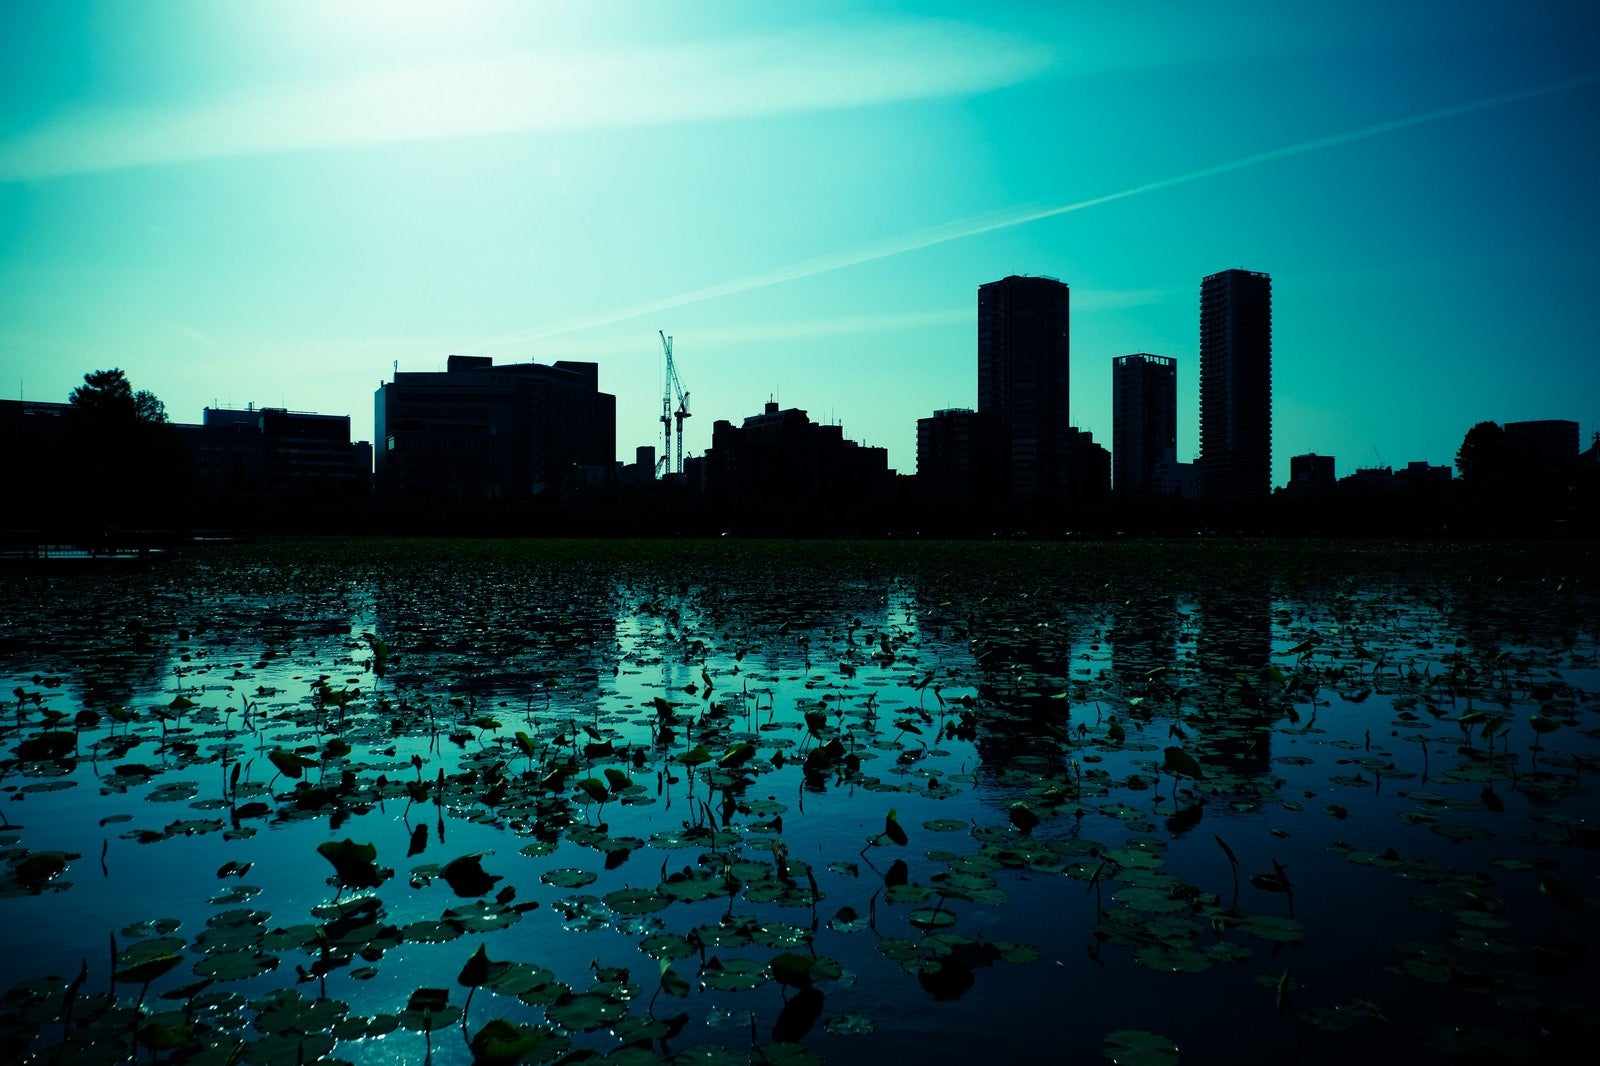 「蓮の池と都会のシルエット」の写真